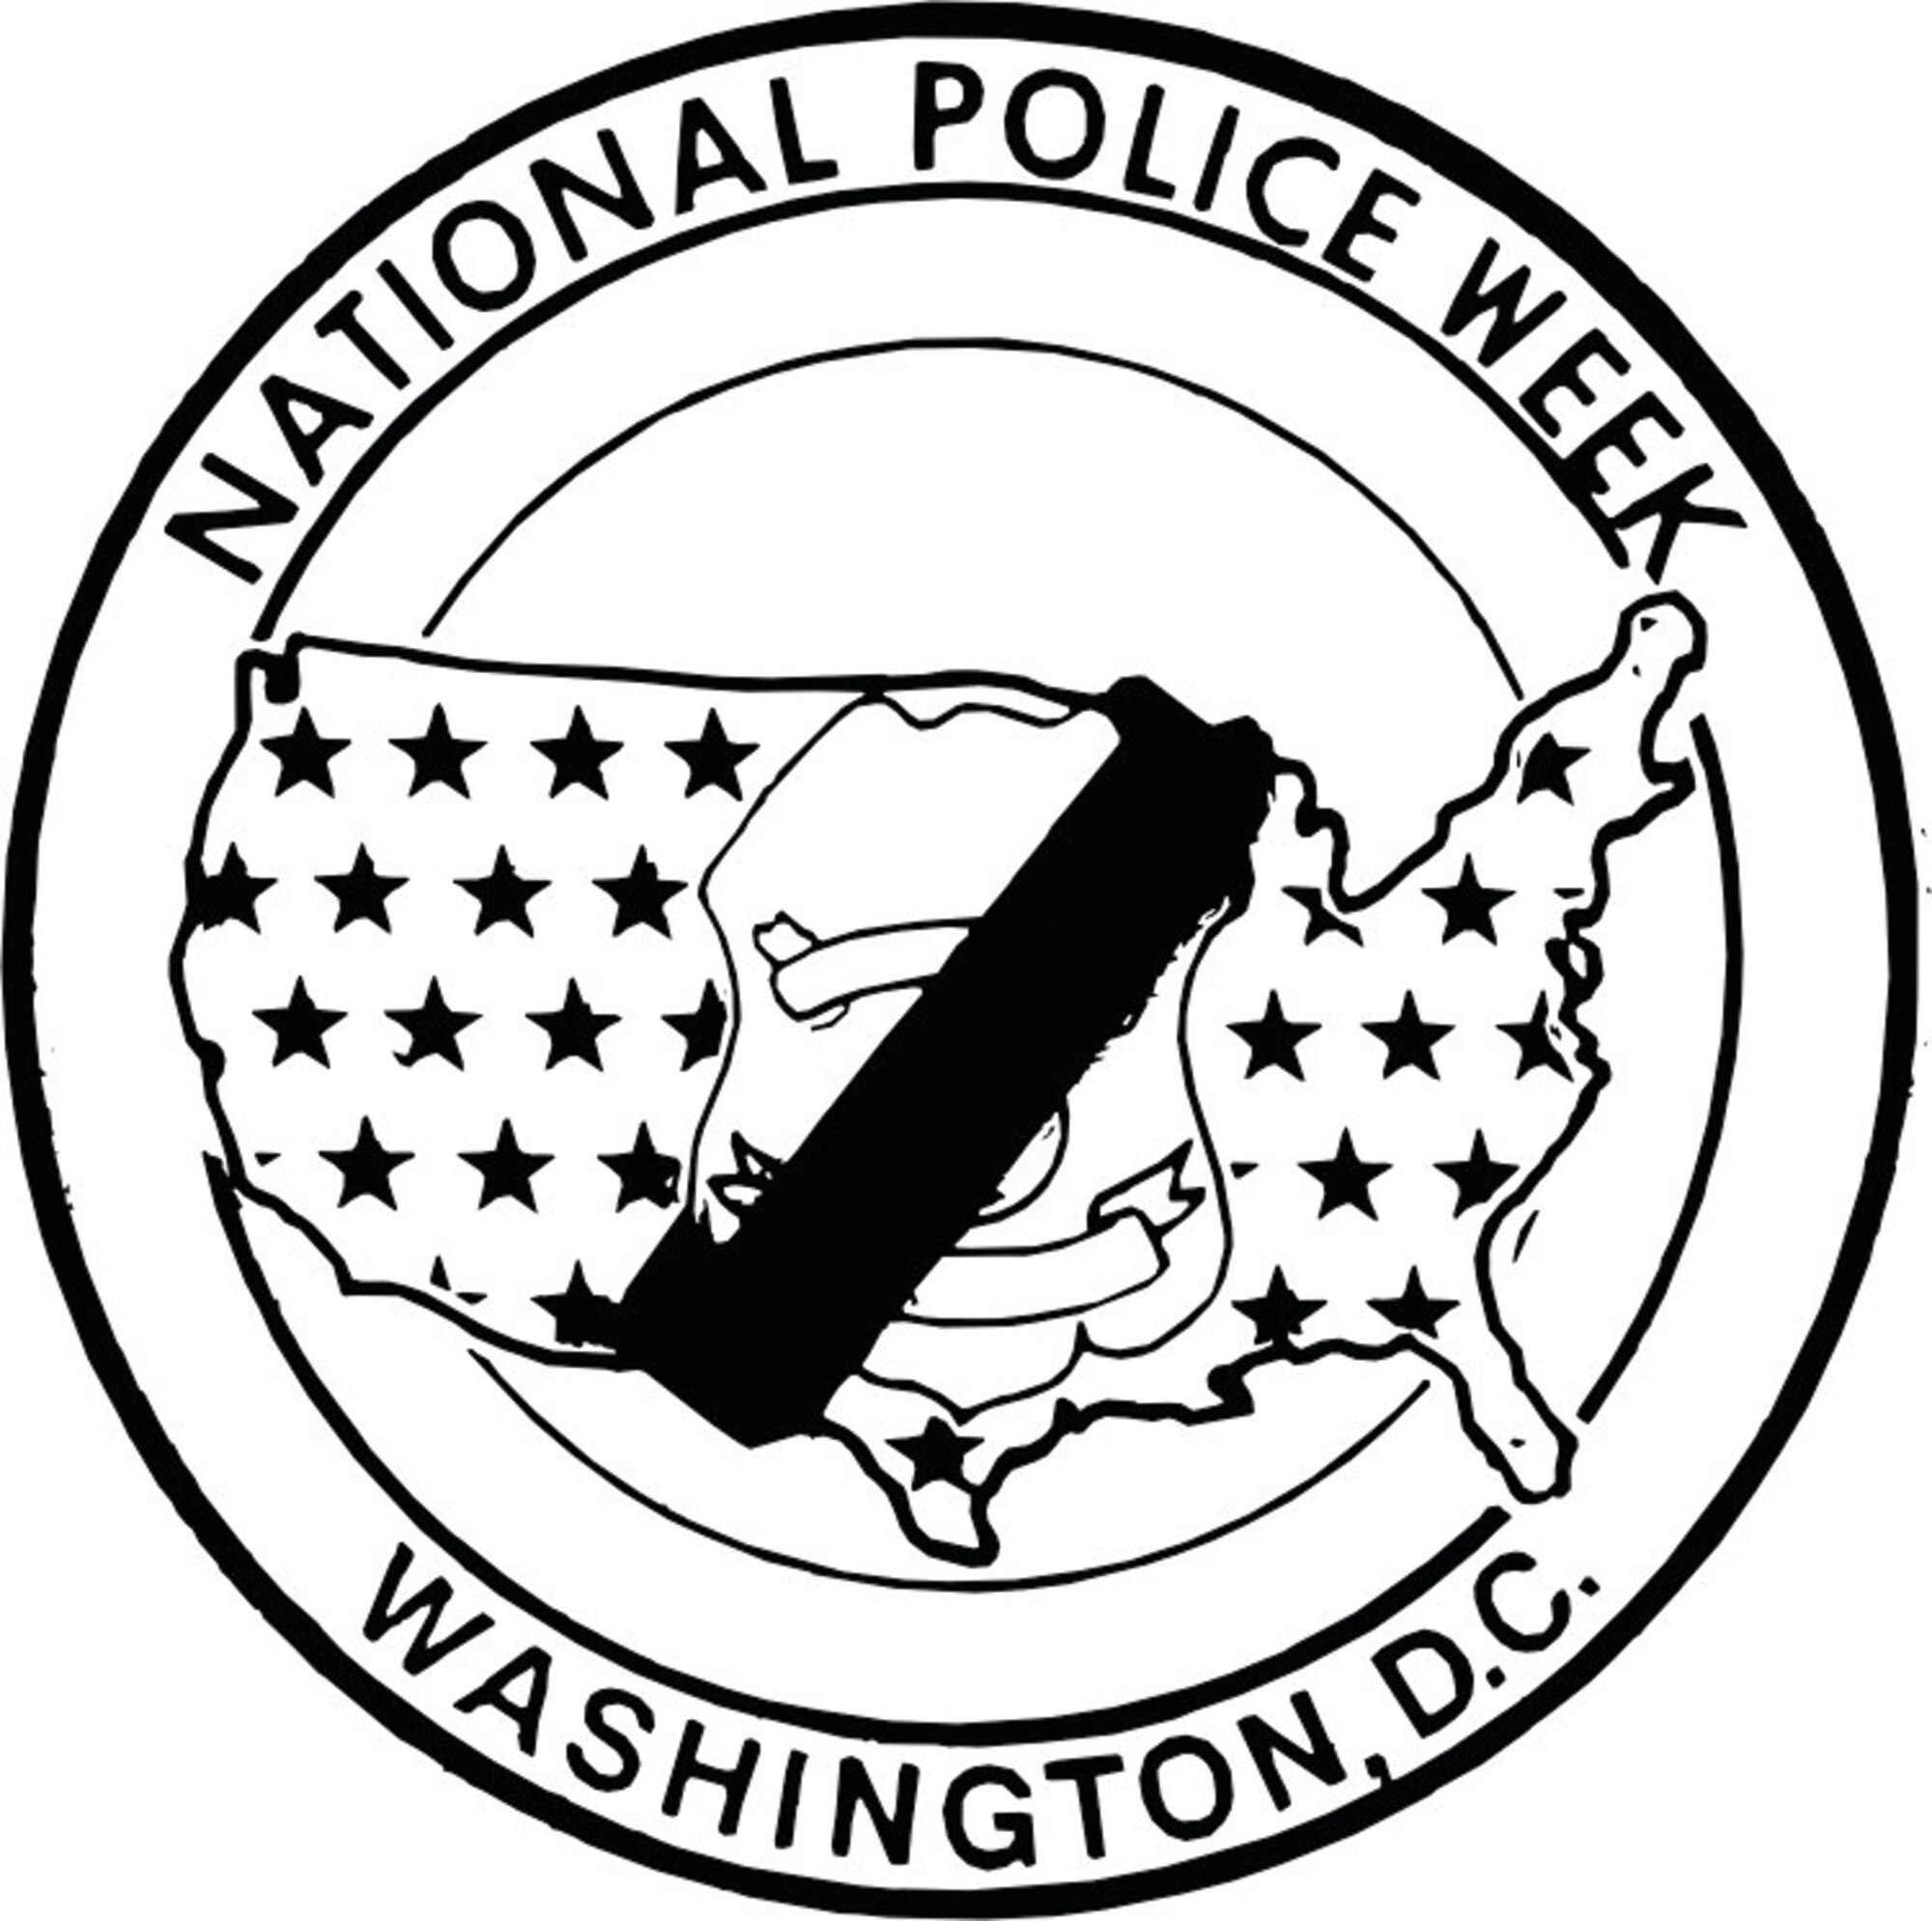 National Police Week runs May 11 through 17.